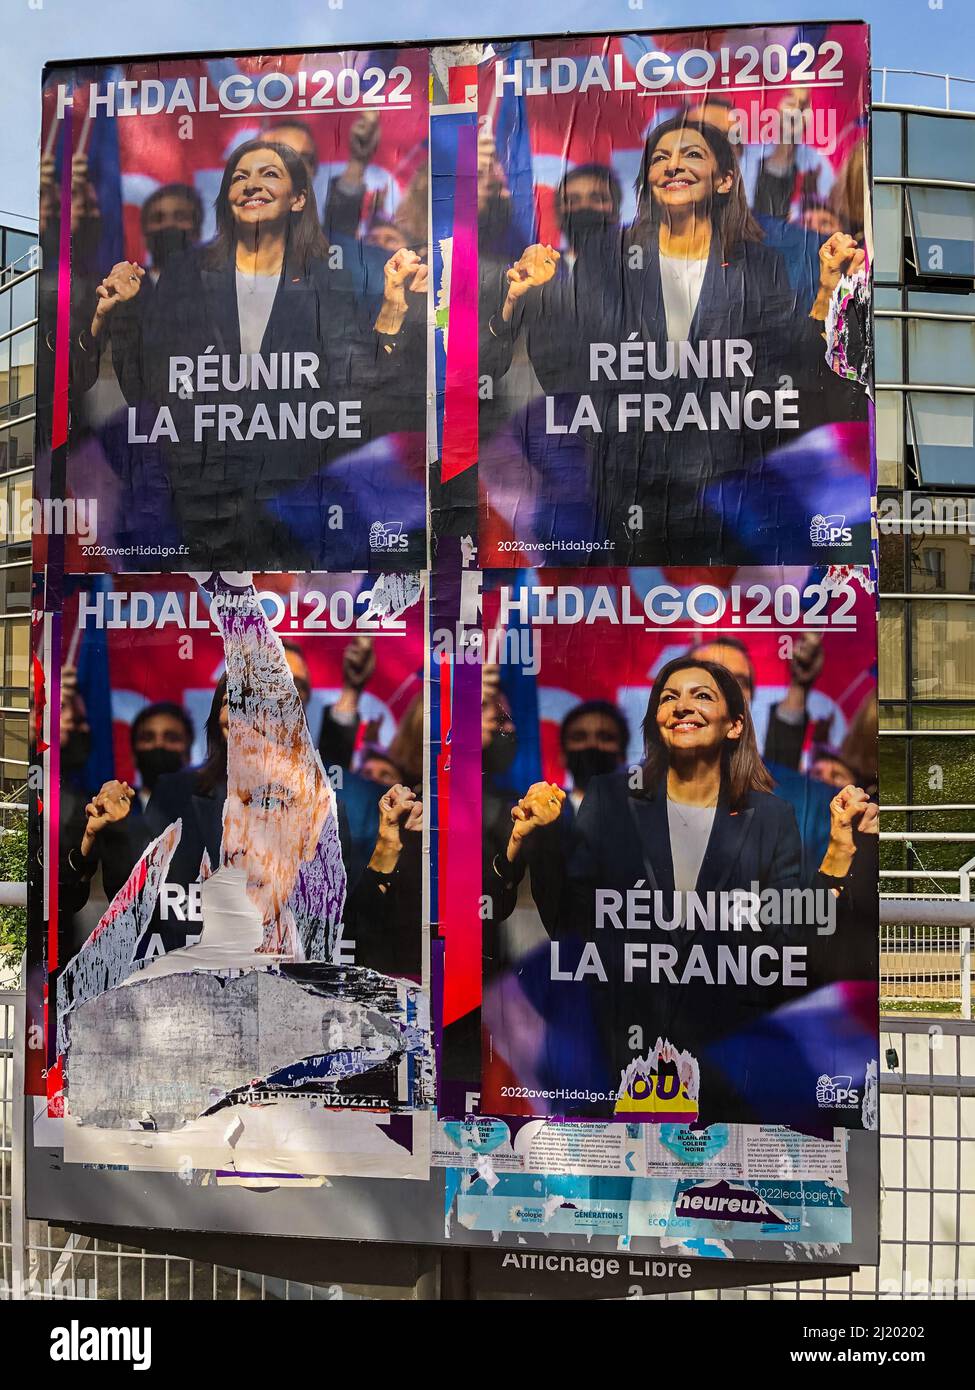 Saint Maurice, France, banlieue parisienne, Panneaux d'affiches électorales françaises, sur mur, rue, Hidalgo, candidate féminine, Parti socialiste, élections en france Banque D'Images